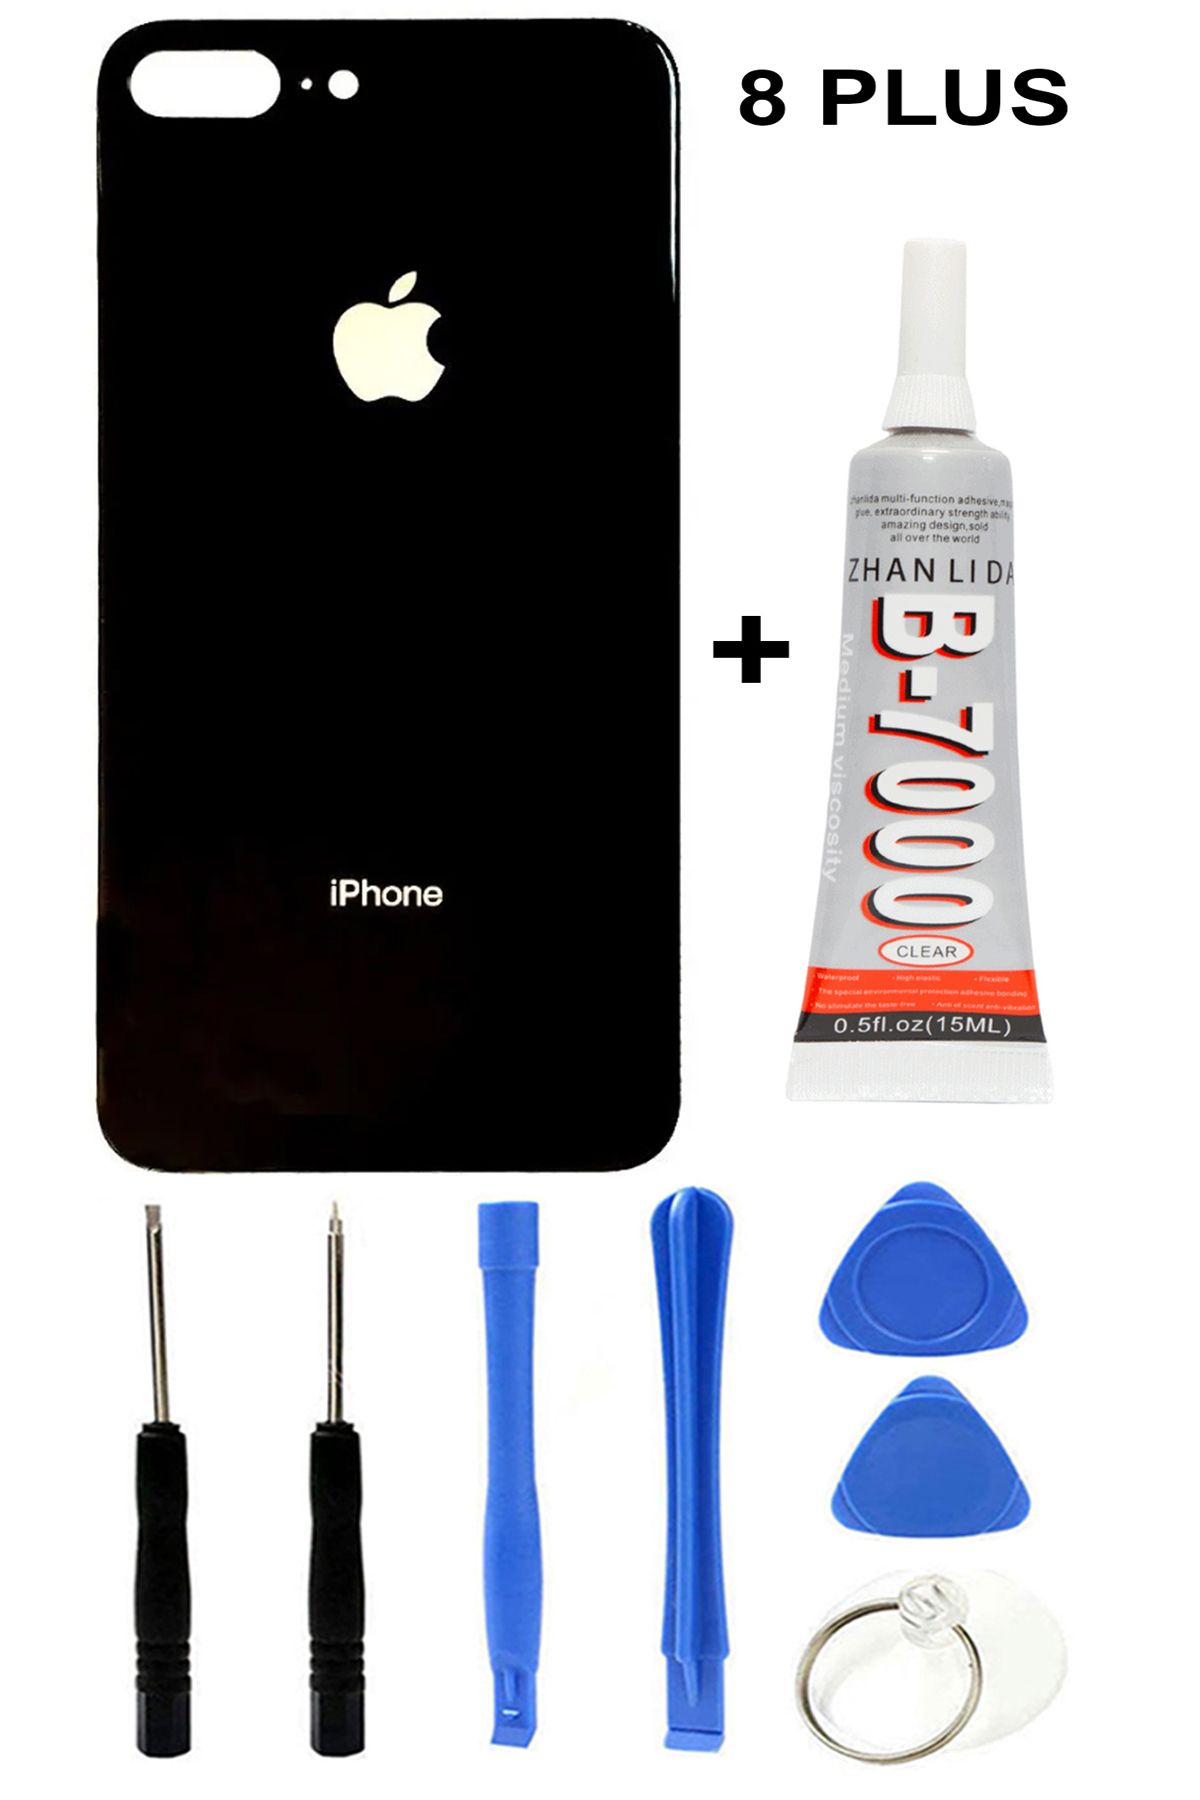 Ceykergsm Apple İphone 8 PLUS Arka Cam Kapak Batarya Pil Kapağı Siyah + Tamir Seti + Yapıştırıcı B7000 15ml